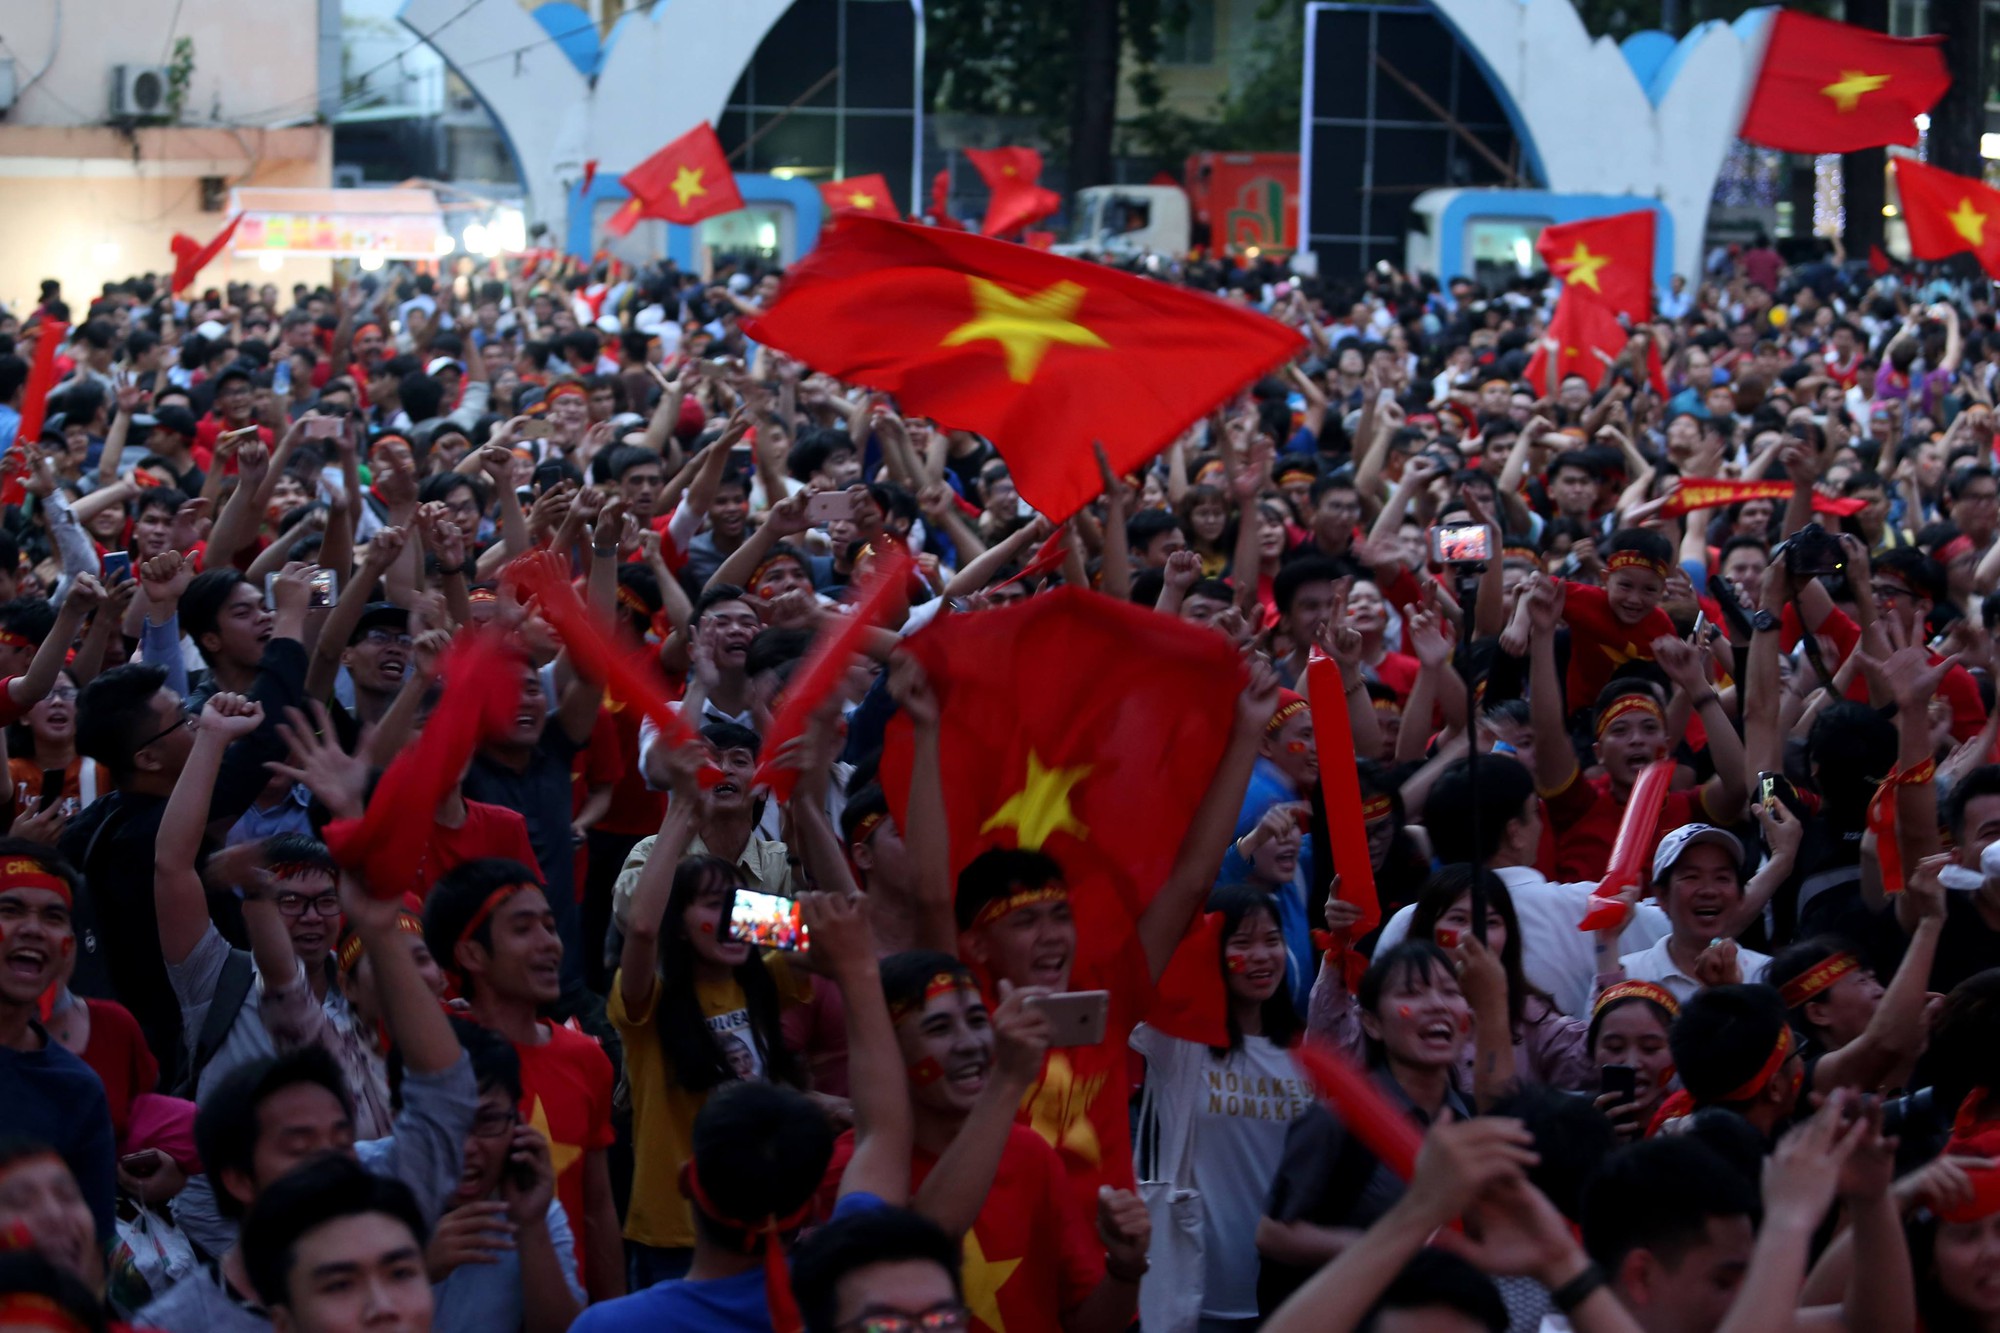 Muôn vạn cảm xúc trước chiến thắng của U23 Việt Nam - Ảnh 6.